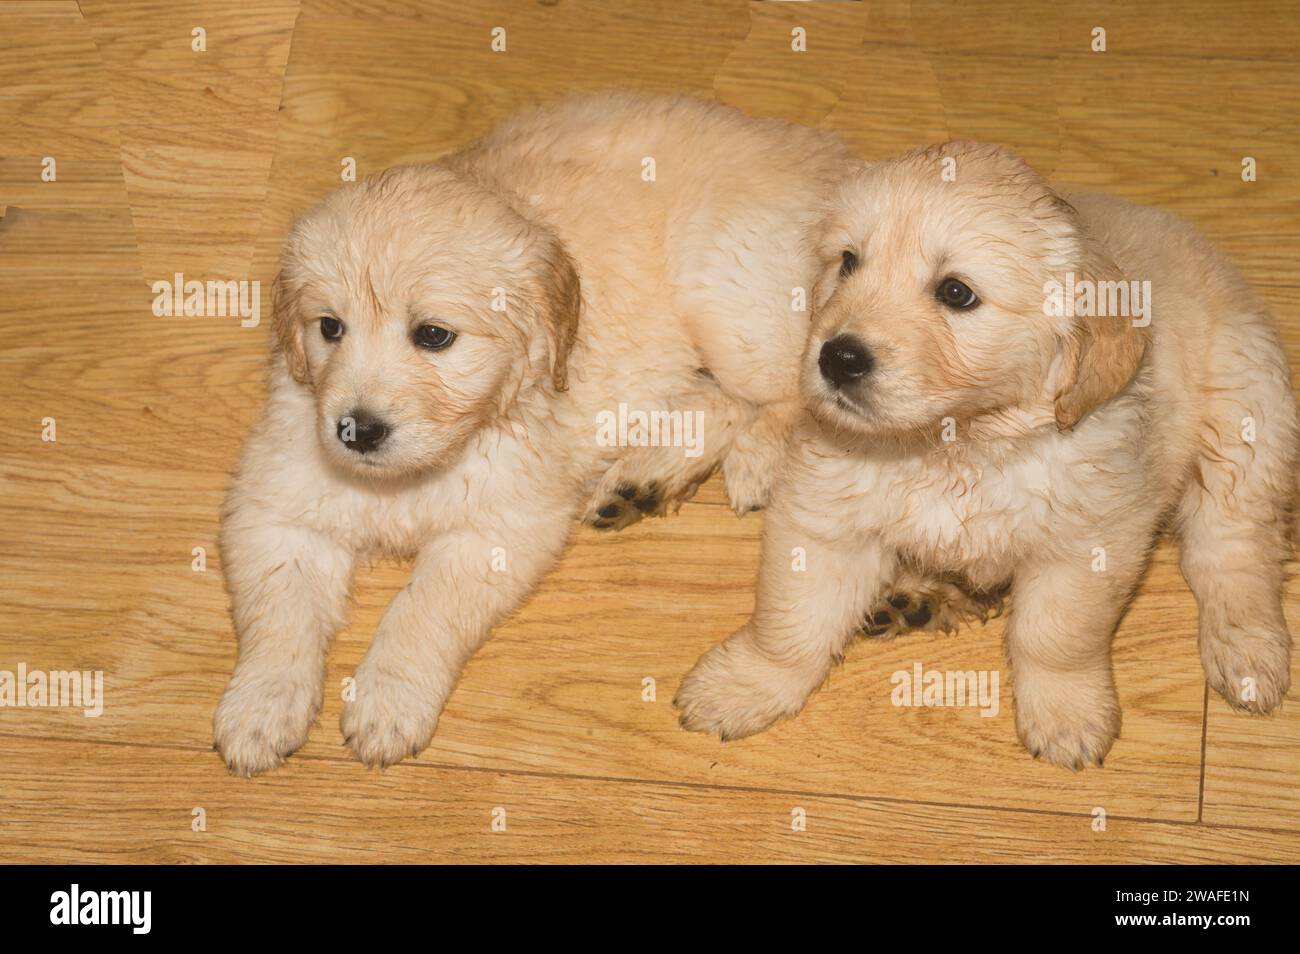 Dos cachorros jóvenes de oro retriever ligeramente húmedos se sientan en un piso de madera Foto de stock